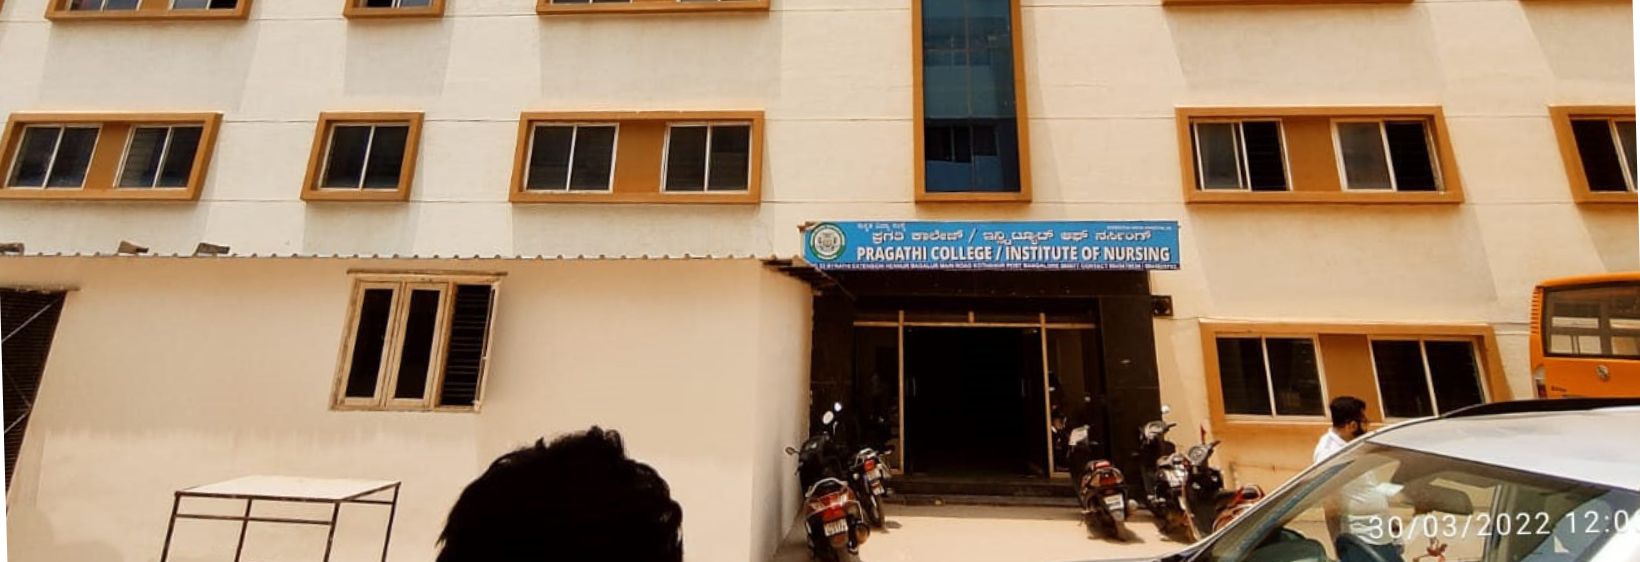 Pragathi Institute of Nursing - Bangalore